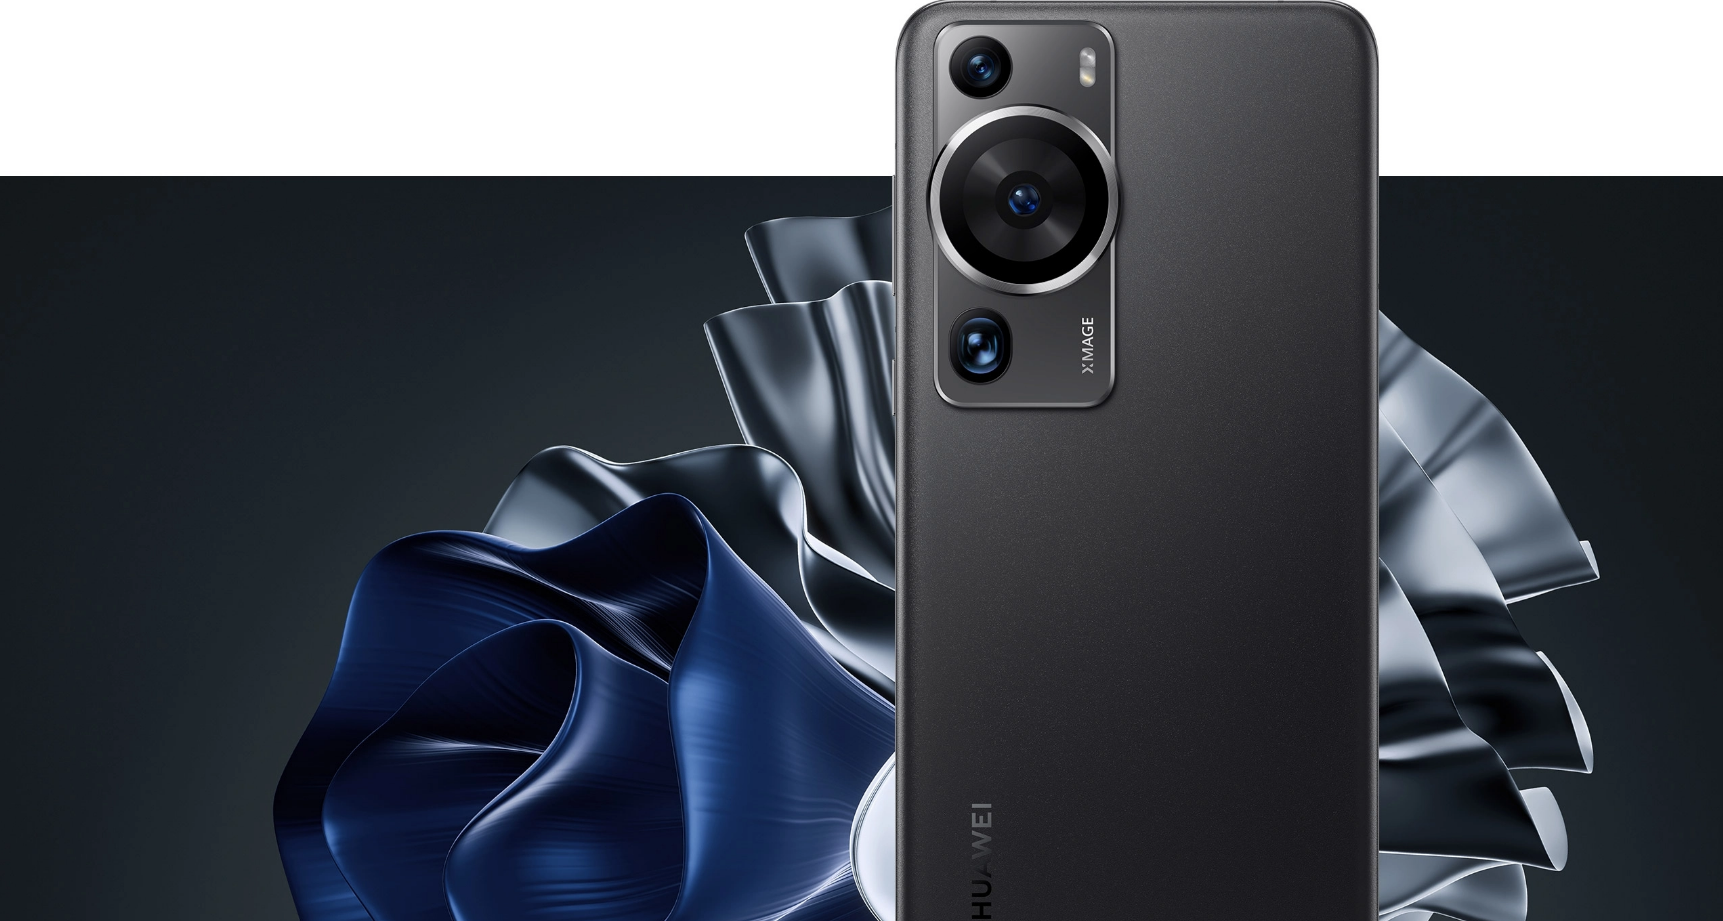 Mate X5: así es el nuevo celular plegable de Huawei que tendrá batería de  5.000mAh y pantalla doble OLED, características, TECNOLOGIA